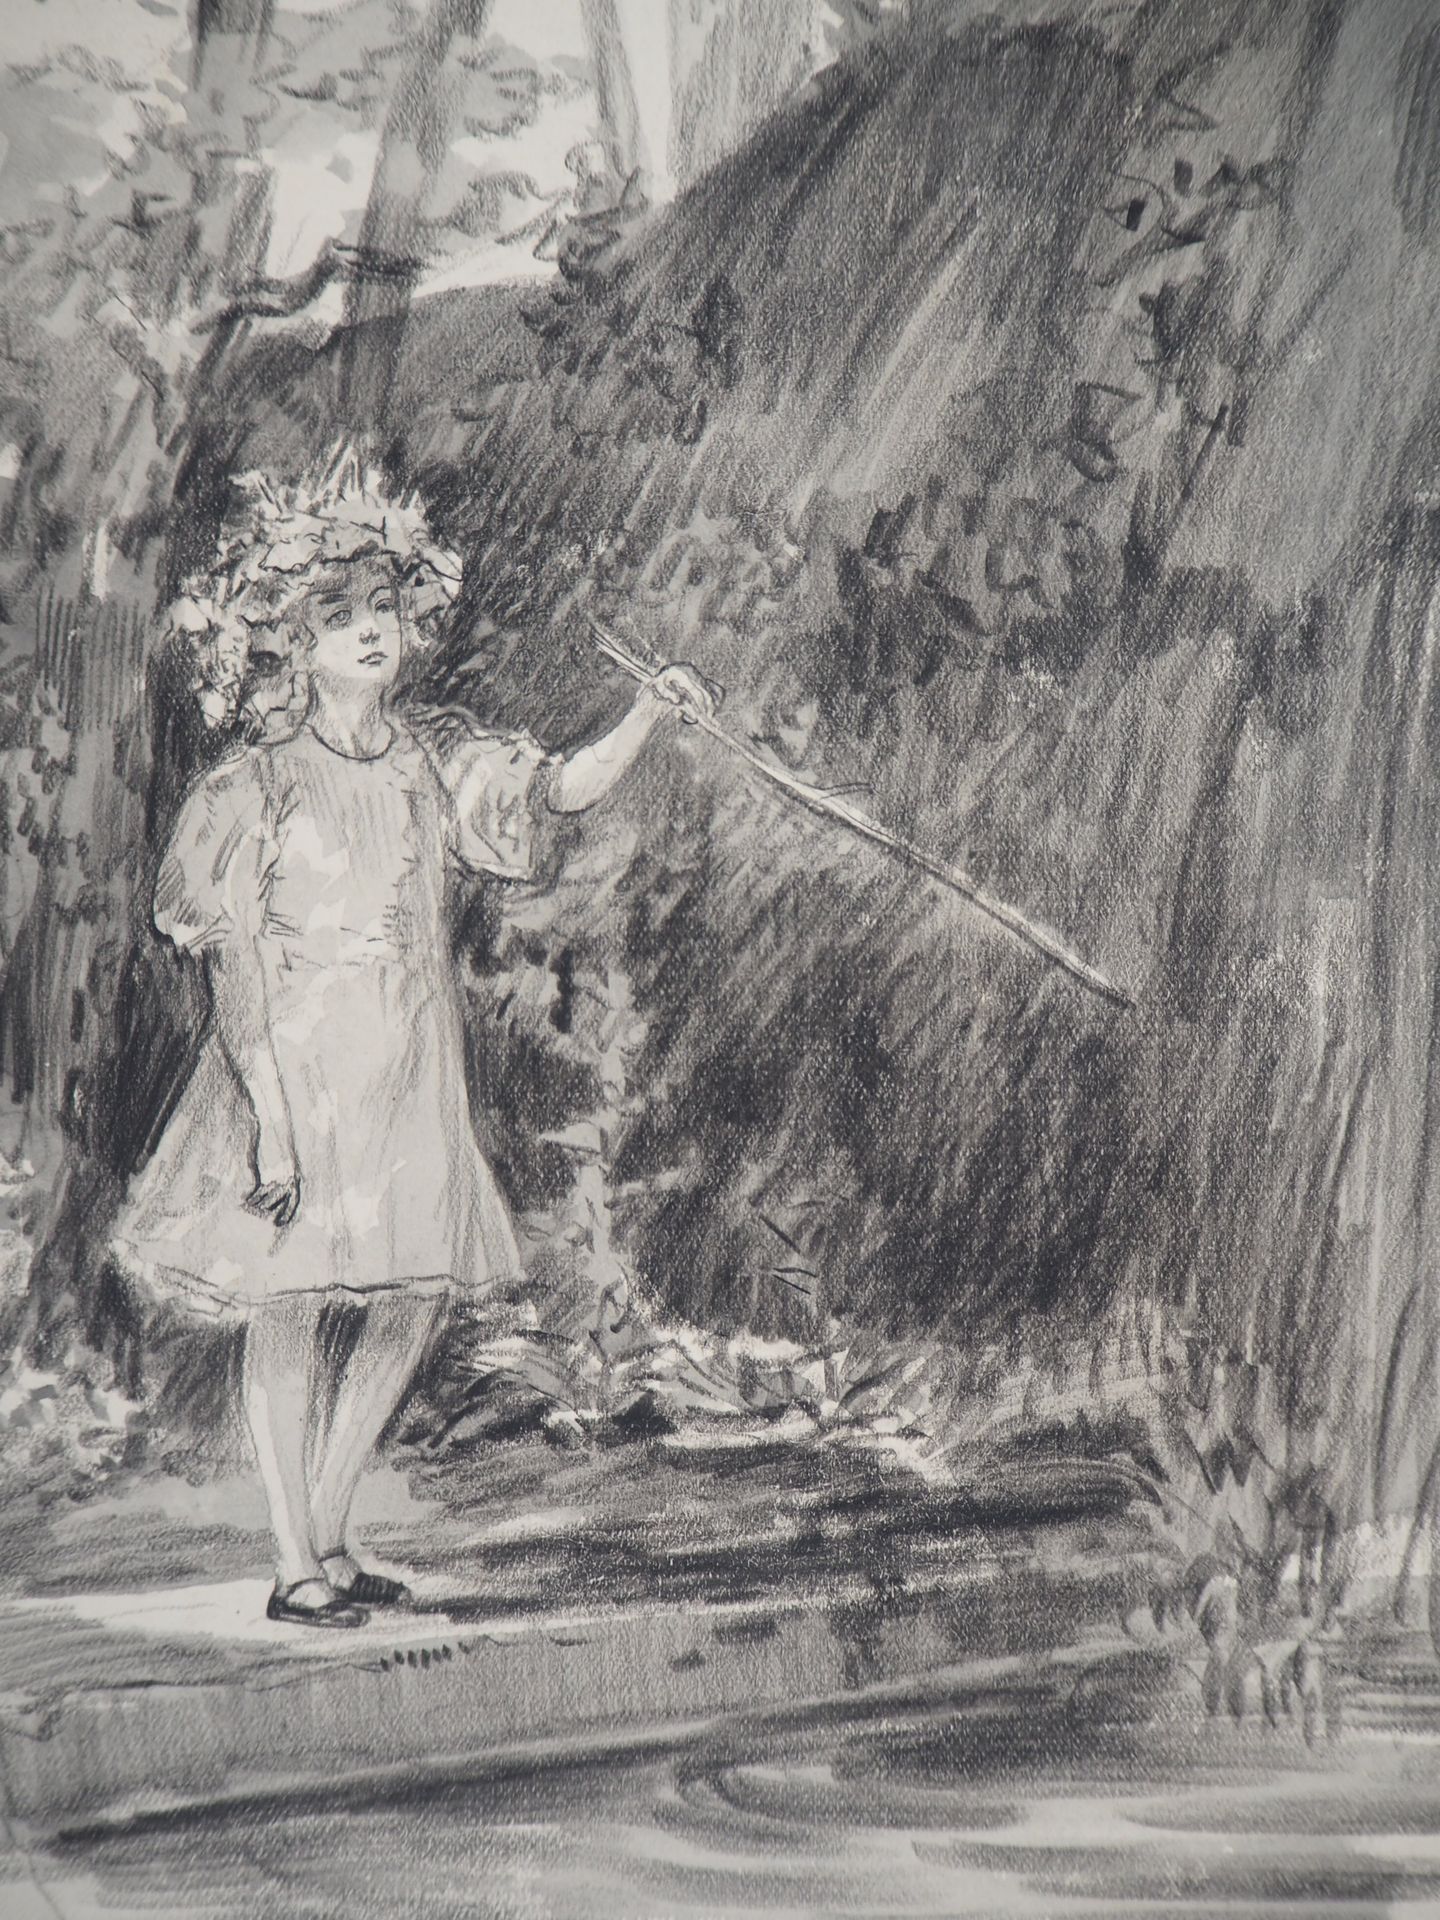 Almery LOBEL-RICHE Alméry LOBEL-RICHE (1880-1950)

Chica al borde del agua, c. 1&hellip;